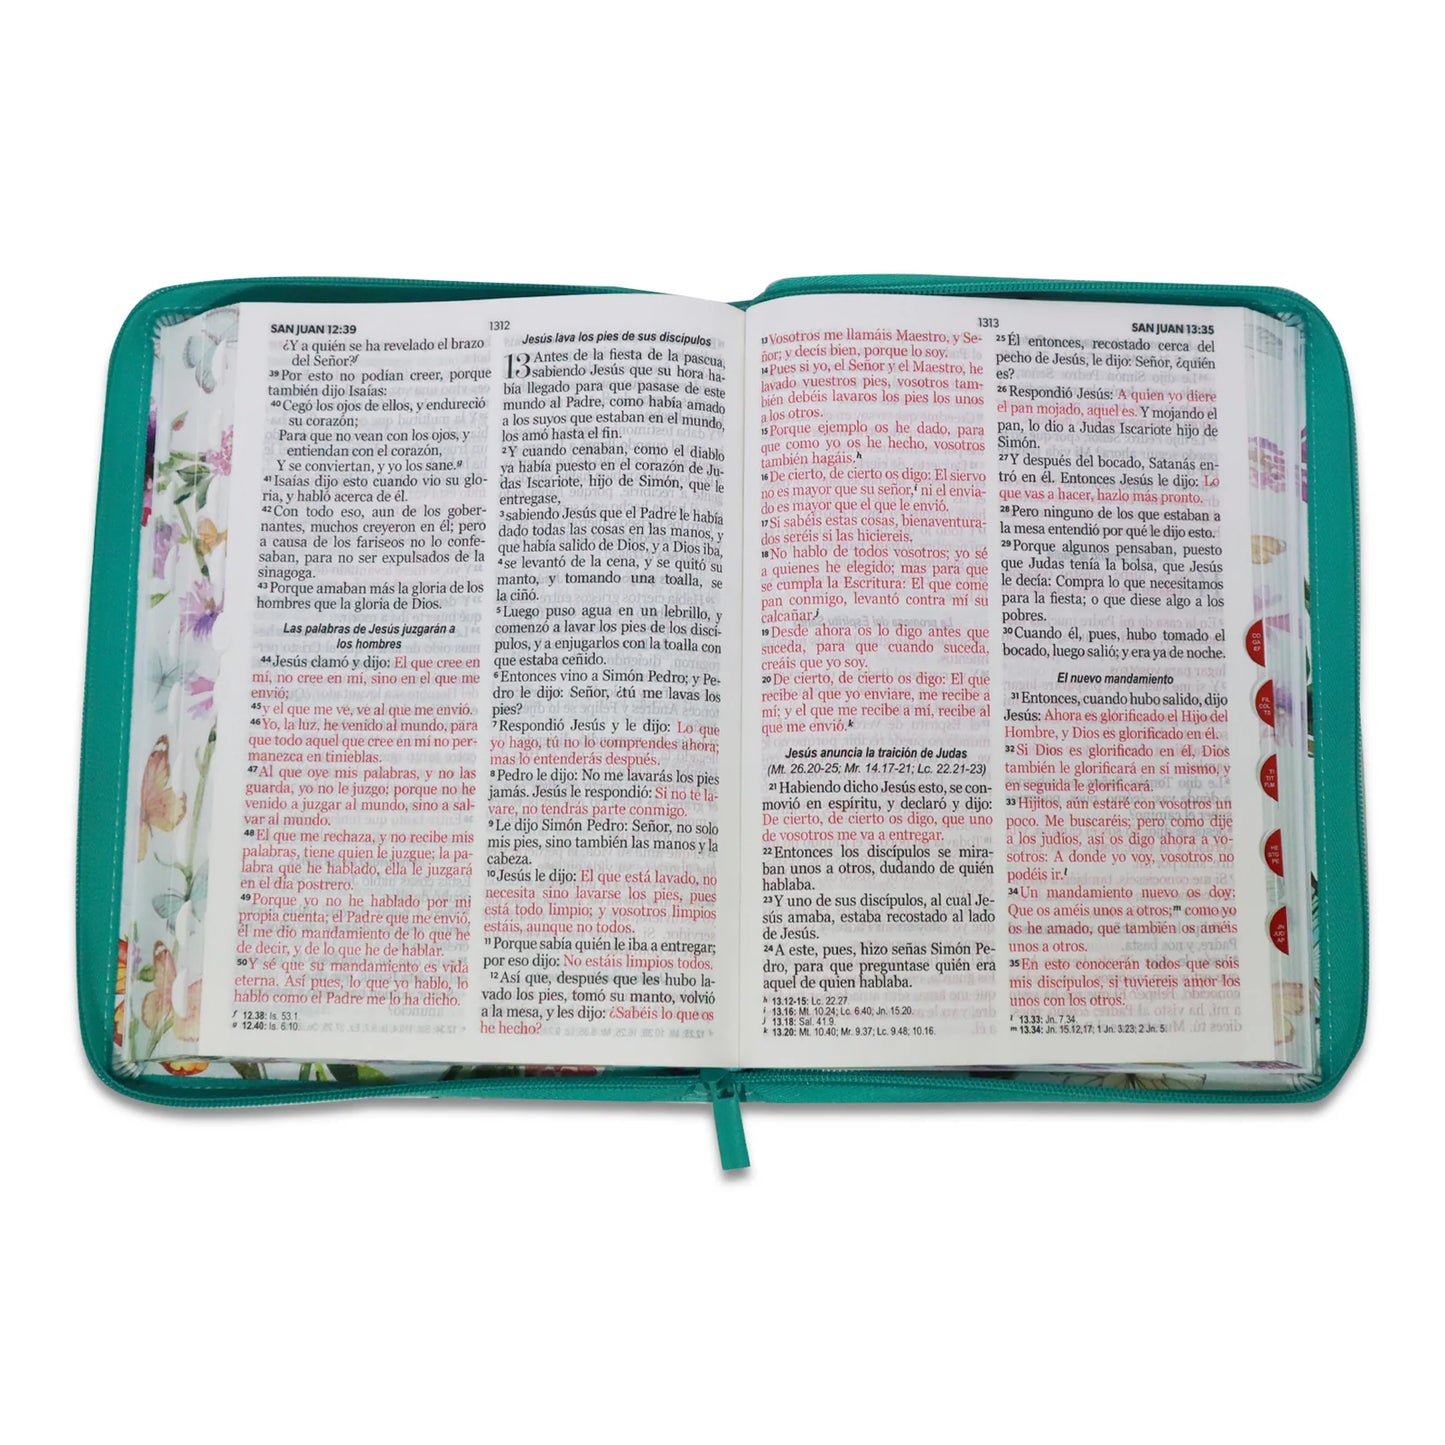 Biblia RVR1960, Tamaño Grande, Imitación Piel, Color Aqua Mariposas, Con Cierre e Indice